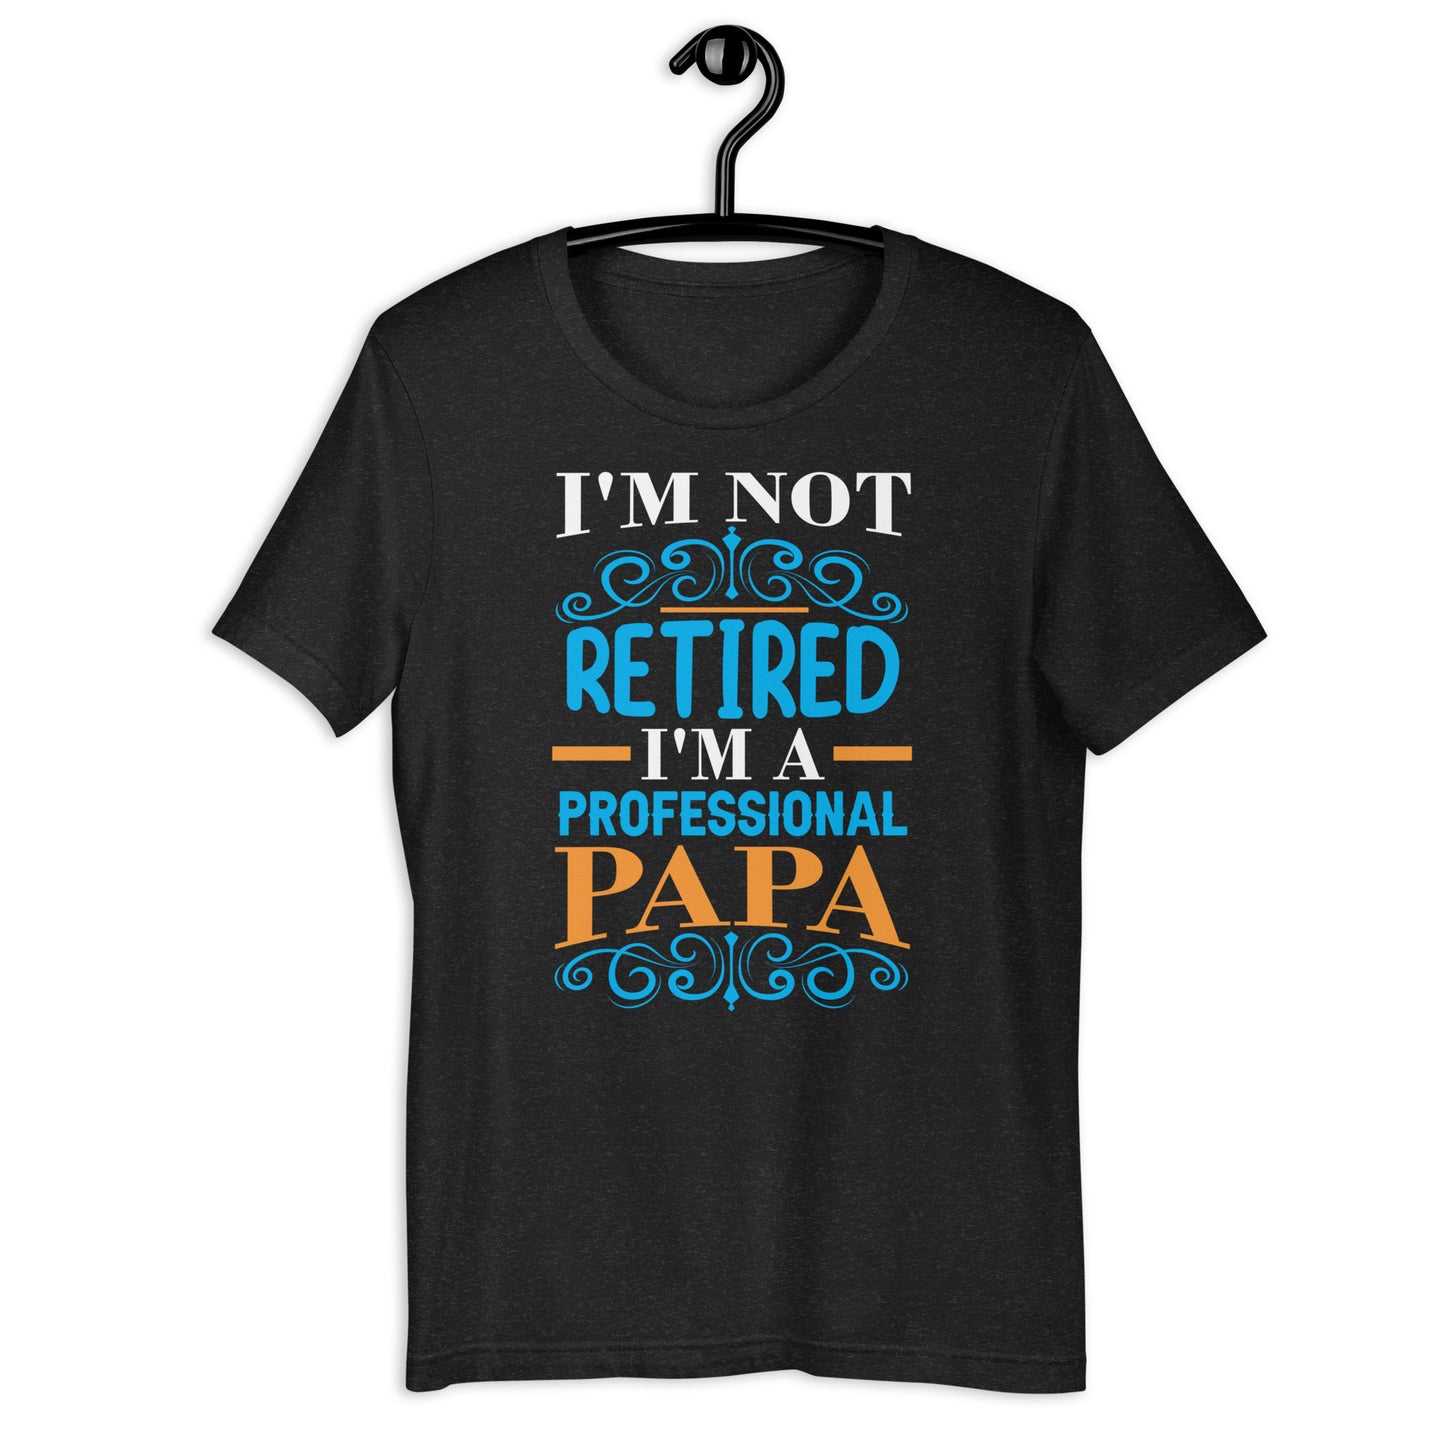 I'm not retired I'm PAPA